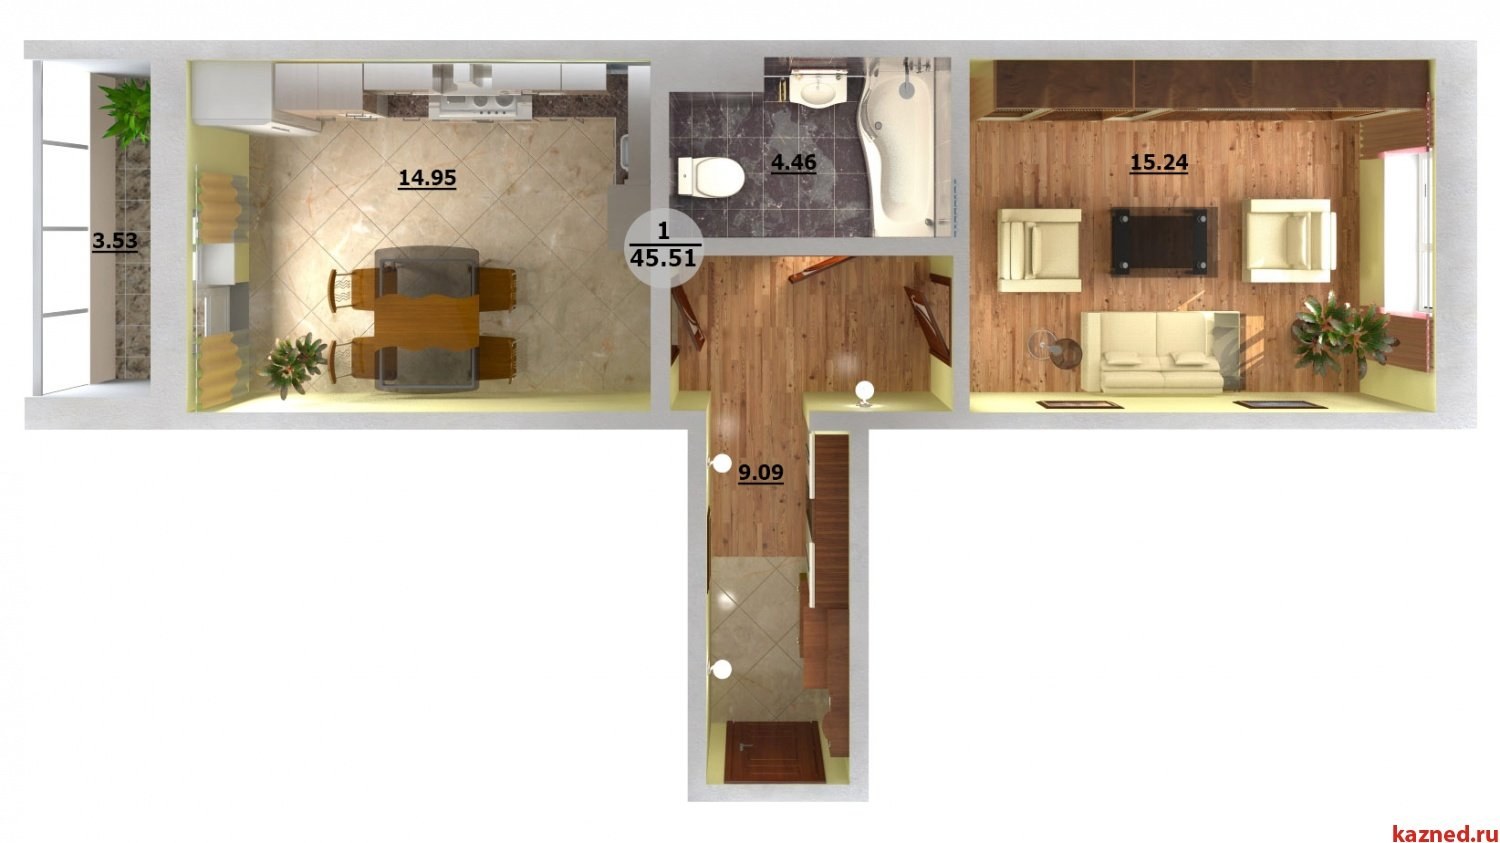 Однокомнатная квартира распашонка планировка дизайн (54 фото) - красивыекартинки и HD фото